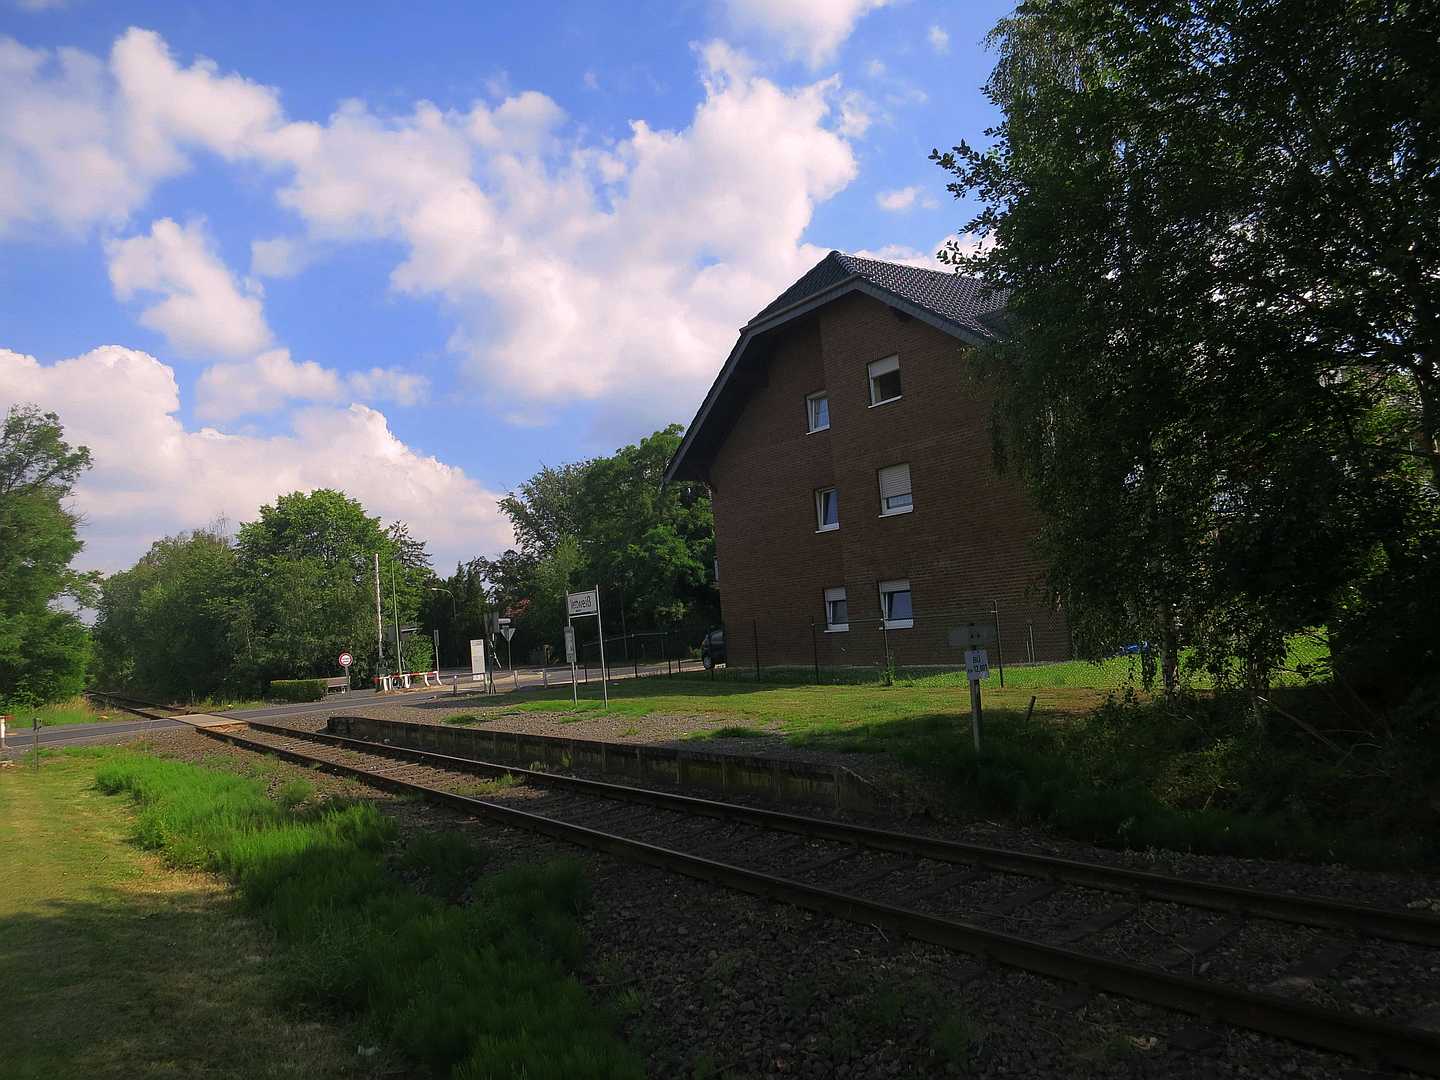 Haltestelle-Boerdebahn 2014-06-18